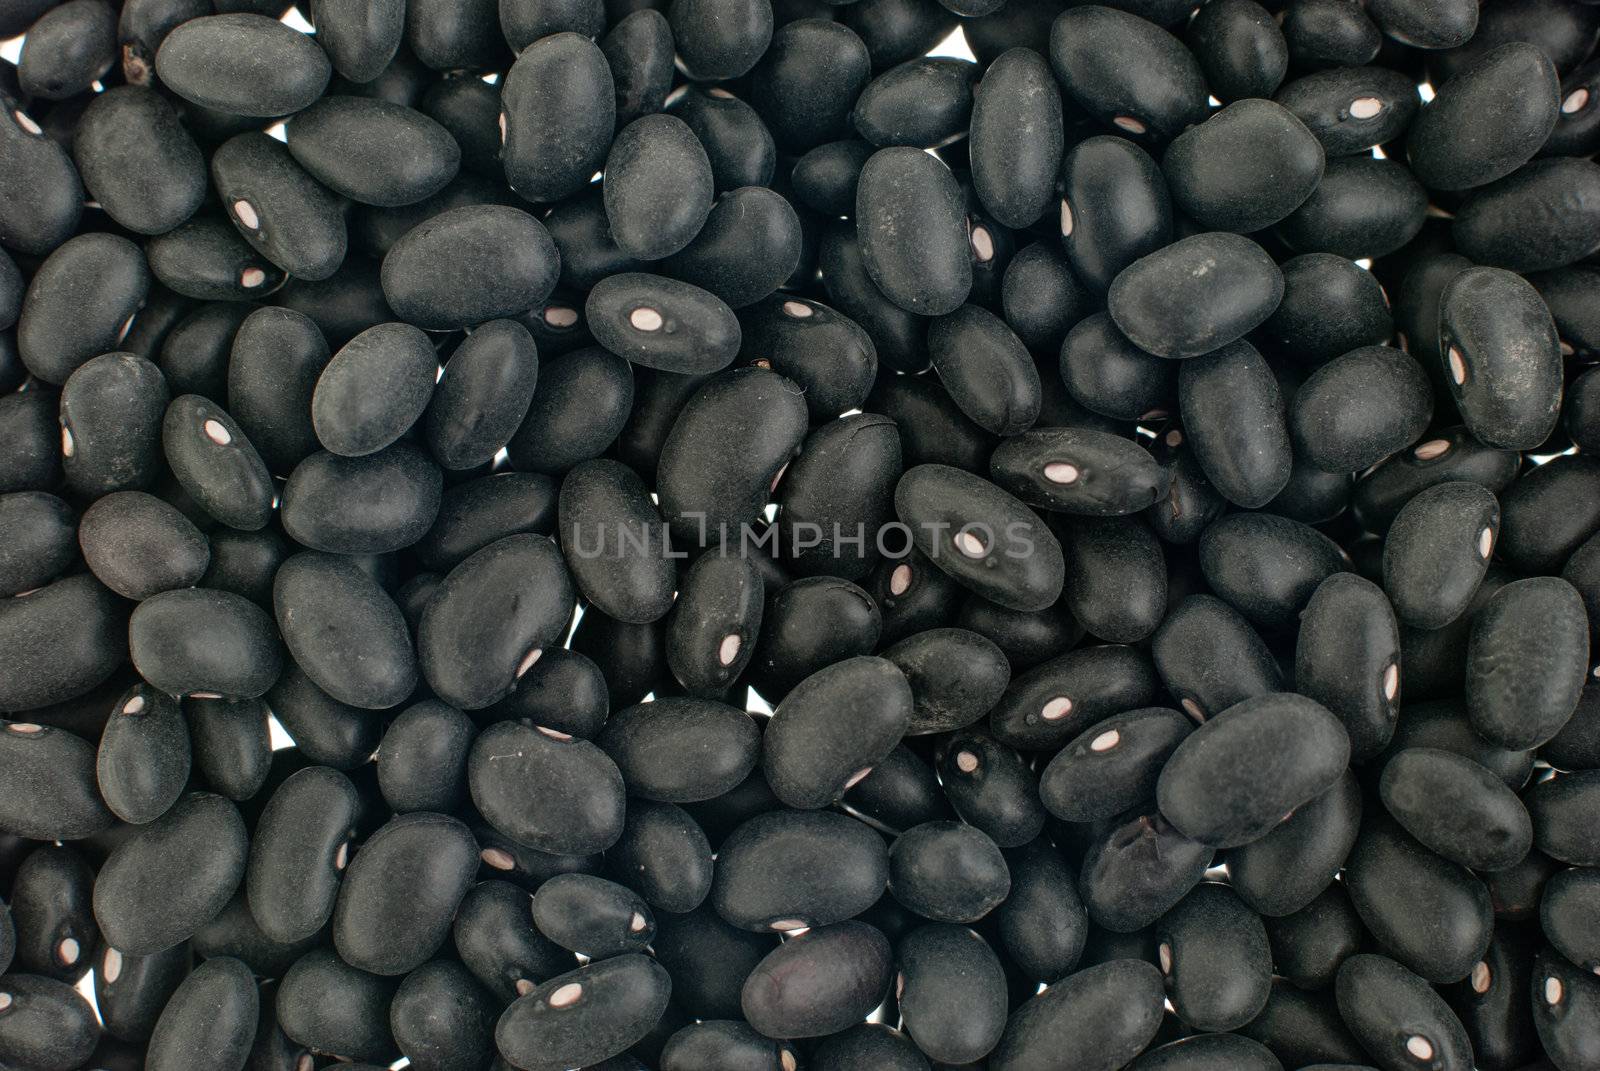 Black beans by homydesign